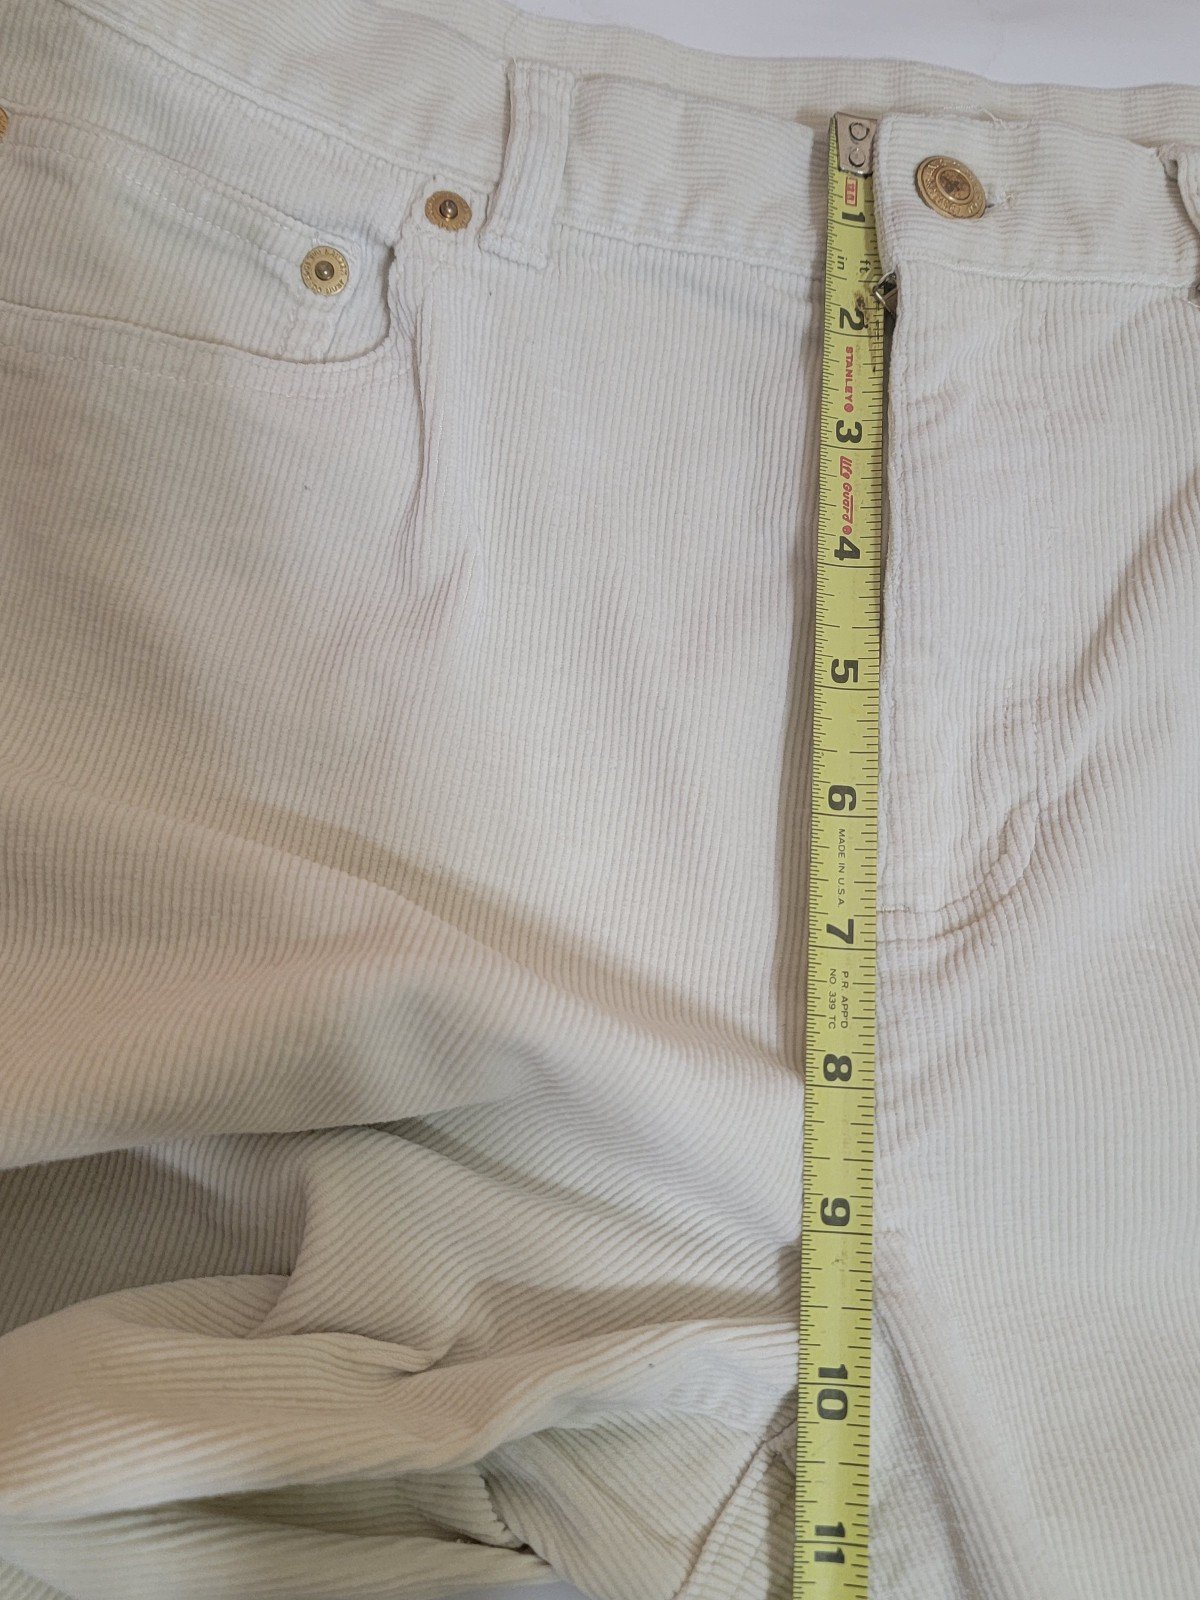 Latest  Ralph lauren lauren jeans co. women´s Corduroy pants size 12 straight leg nv08dfJZZ US Sale